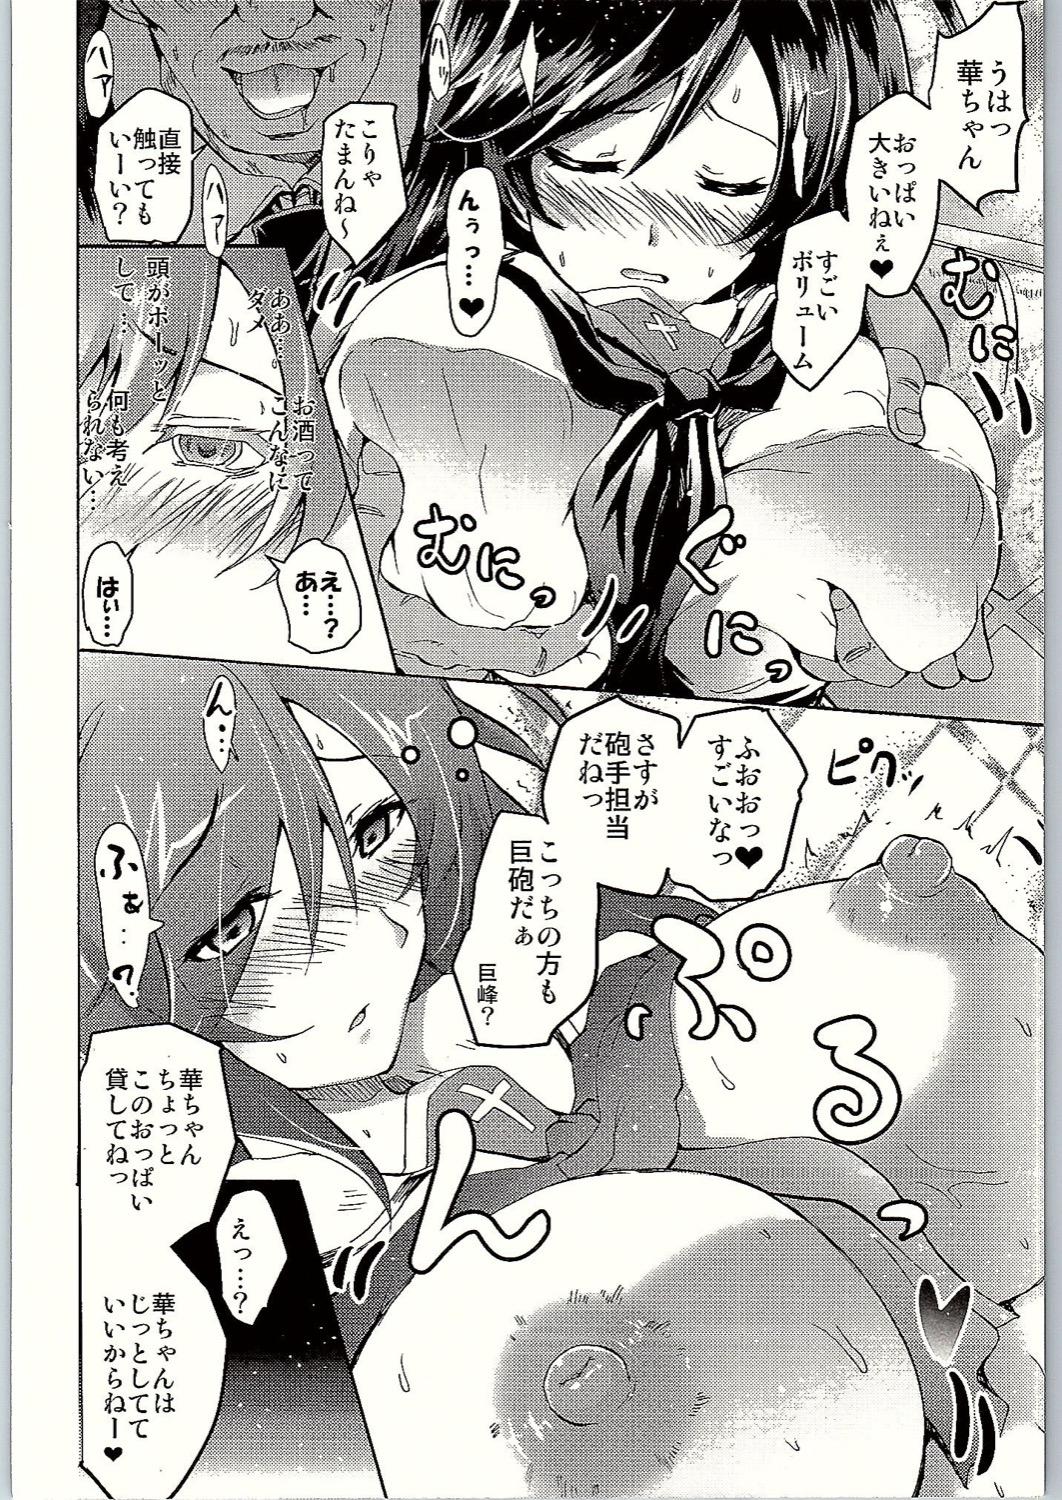 Porno 18 SOS! Senshadou no Okaneatsume wa "Settai" Party! - Girls und panzer Olderwoman - Page 9